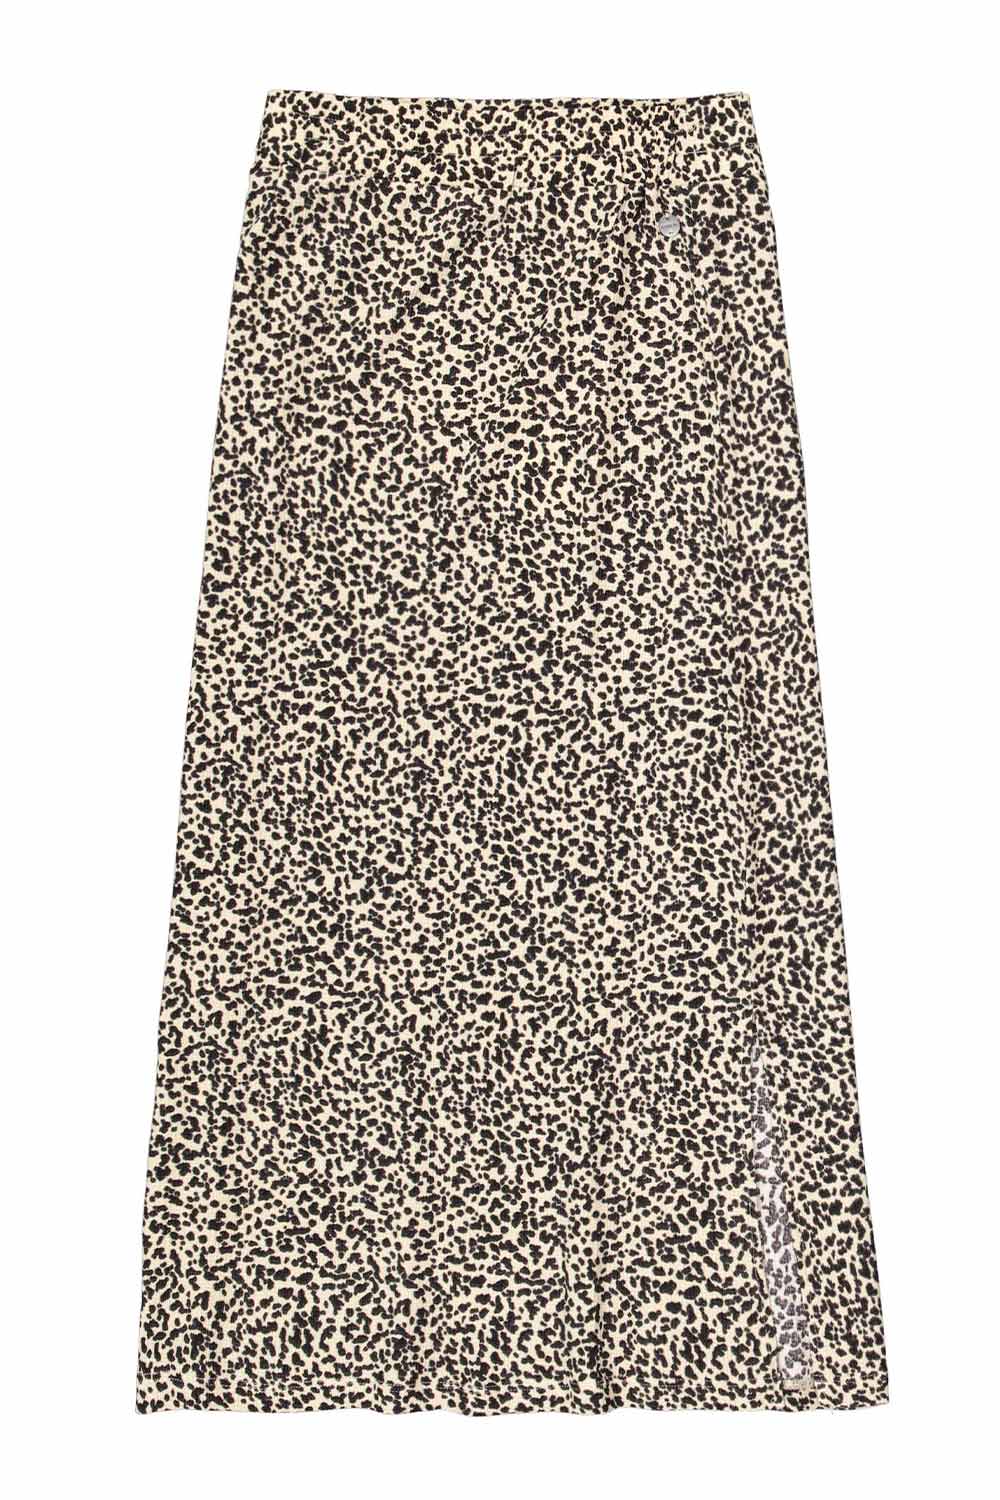 Garcia (Q40120) Women's Leopard Print Pull on Midi Skirt